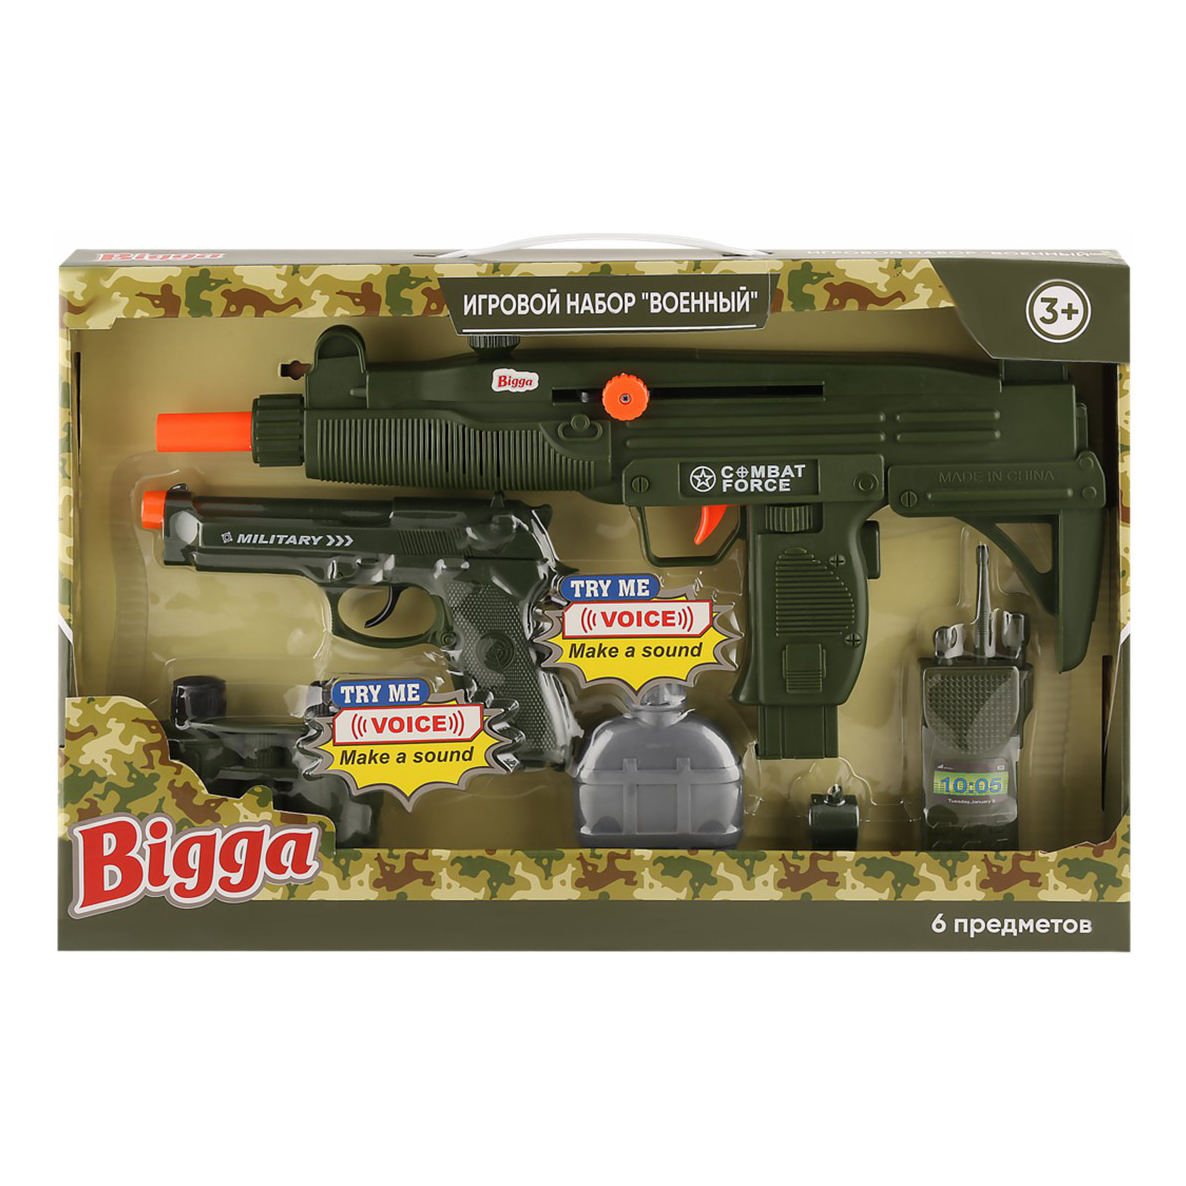 Игрушечный набор оружия Военный Bigga 6 предметов игровой набор junfa toys военный wg a7092 в рюкзачке 11 предметов